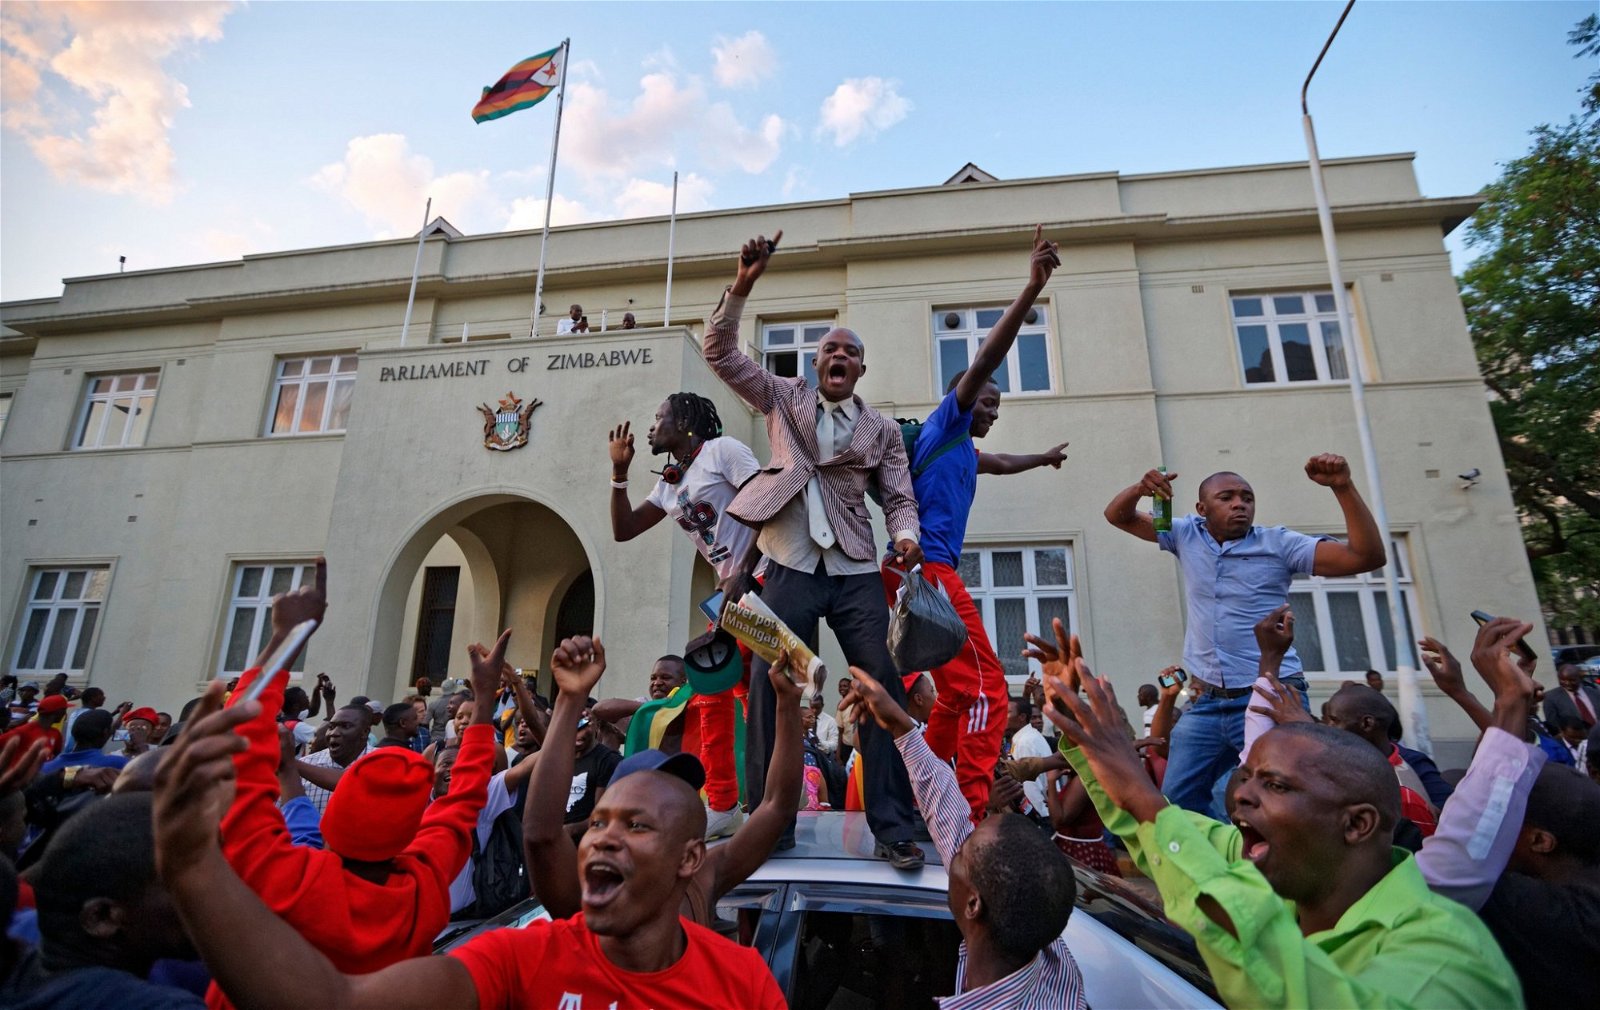 津巴布韦举国欢庆政权交替的一刻。